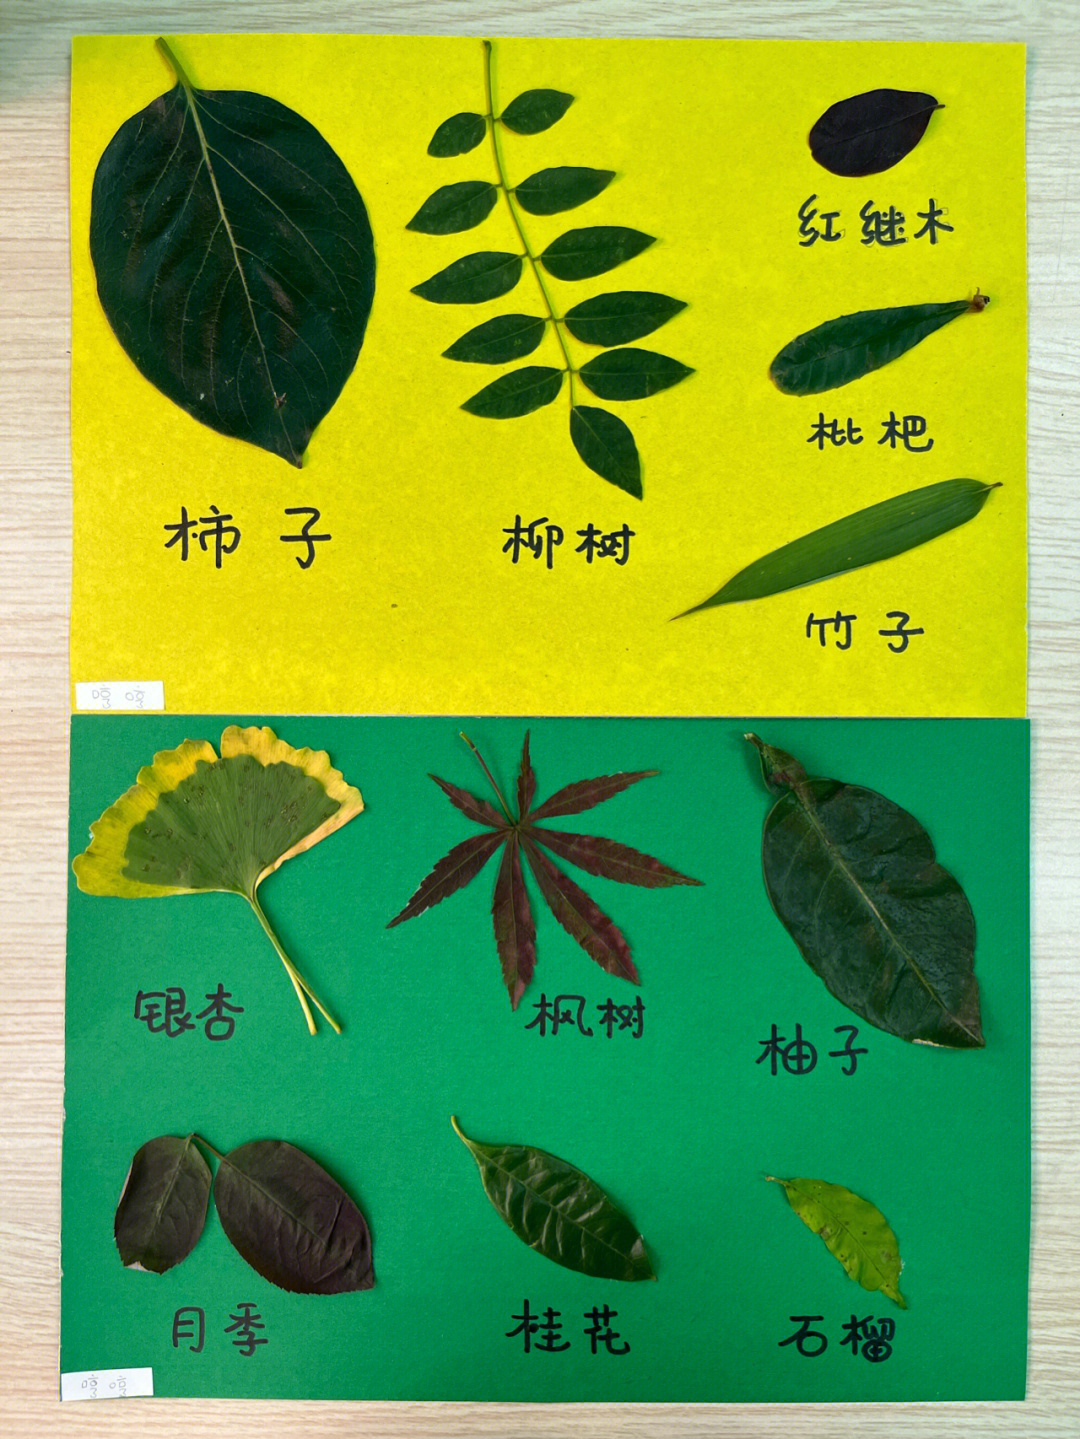 各种树叶的图片和名字图片